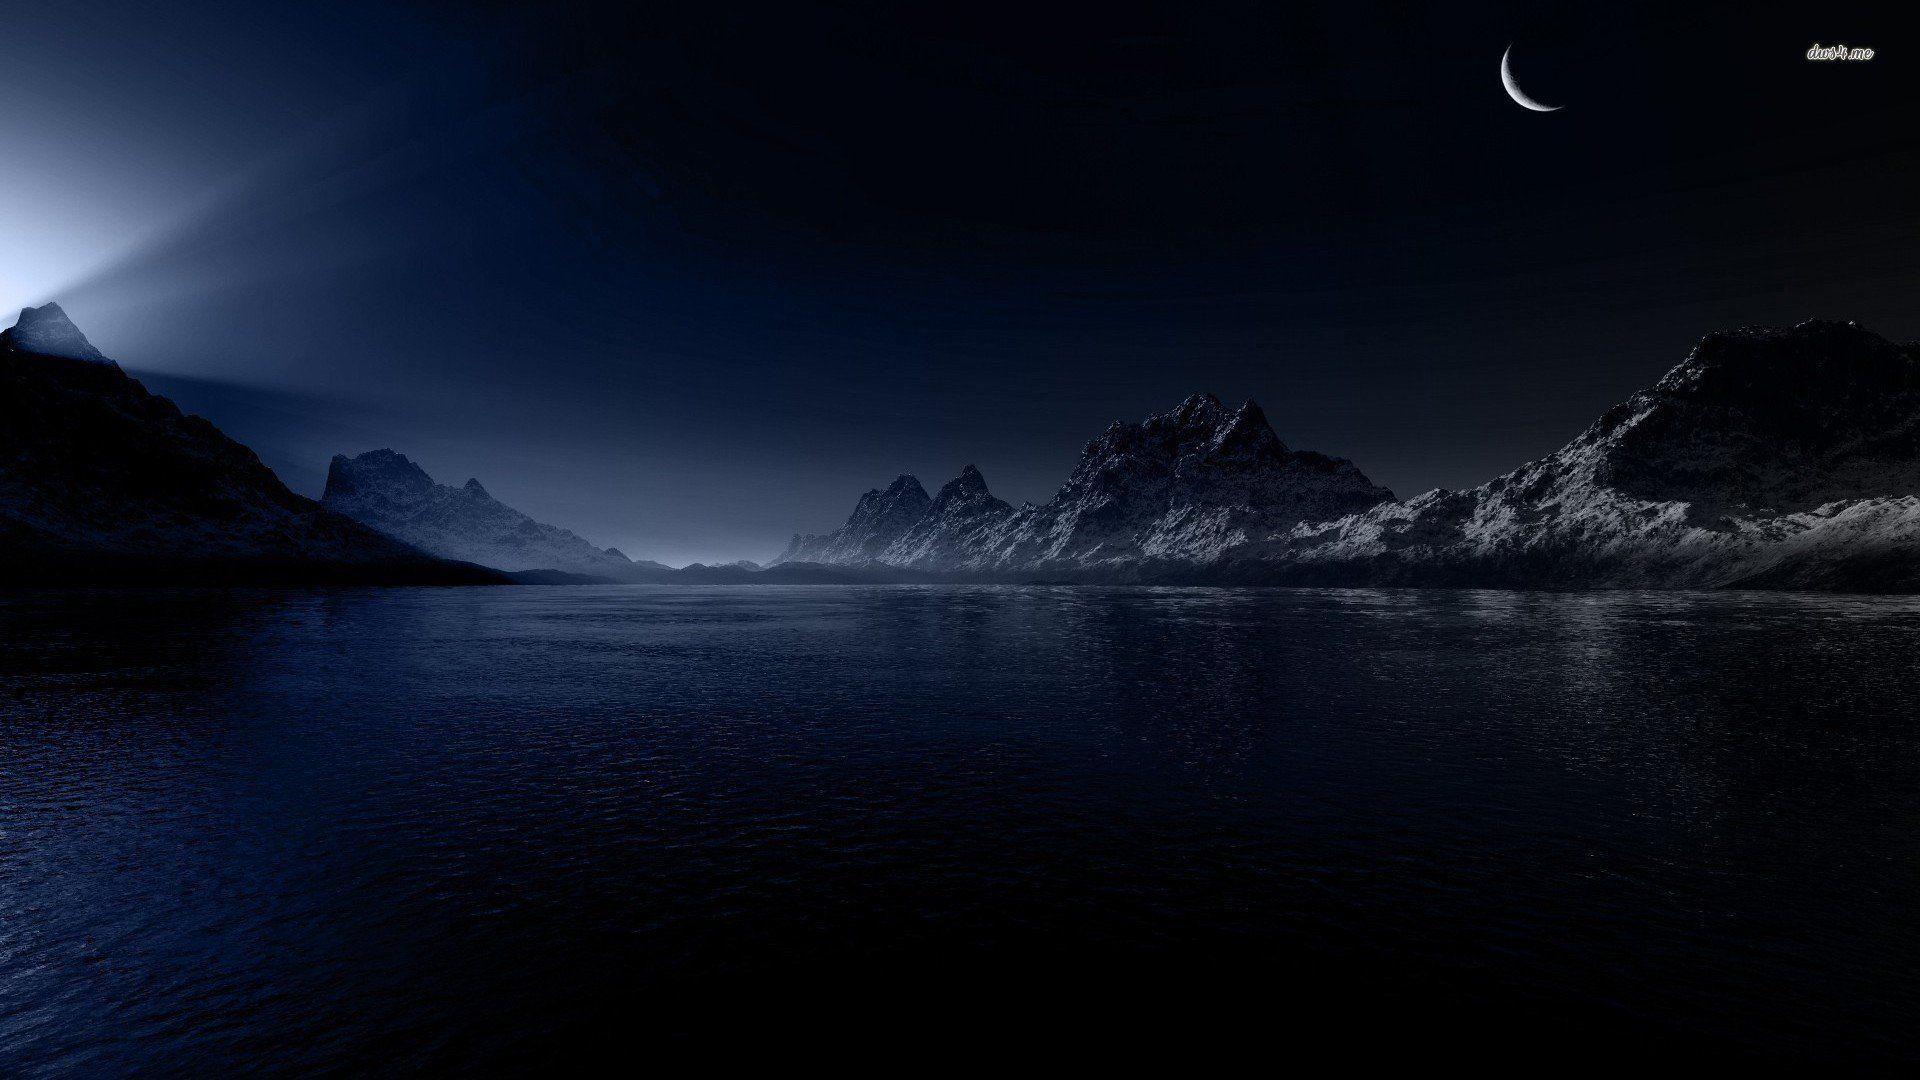 Dark Night Mountains Wallpapers - Top Free Dark Night Mountains Backgrounds  - WallpaperAccess